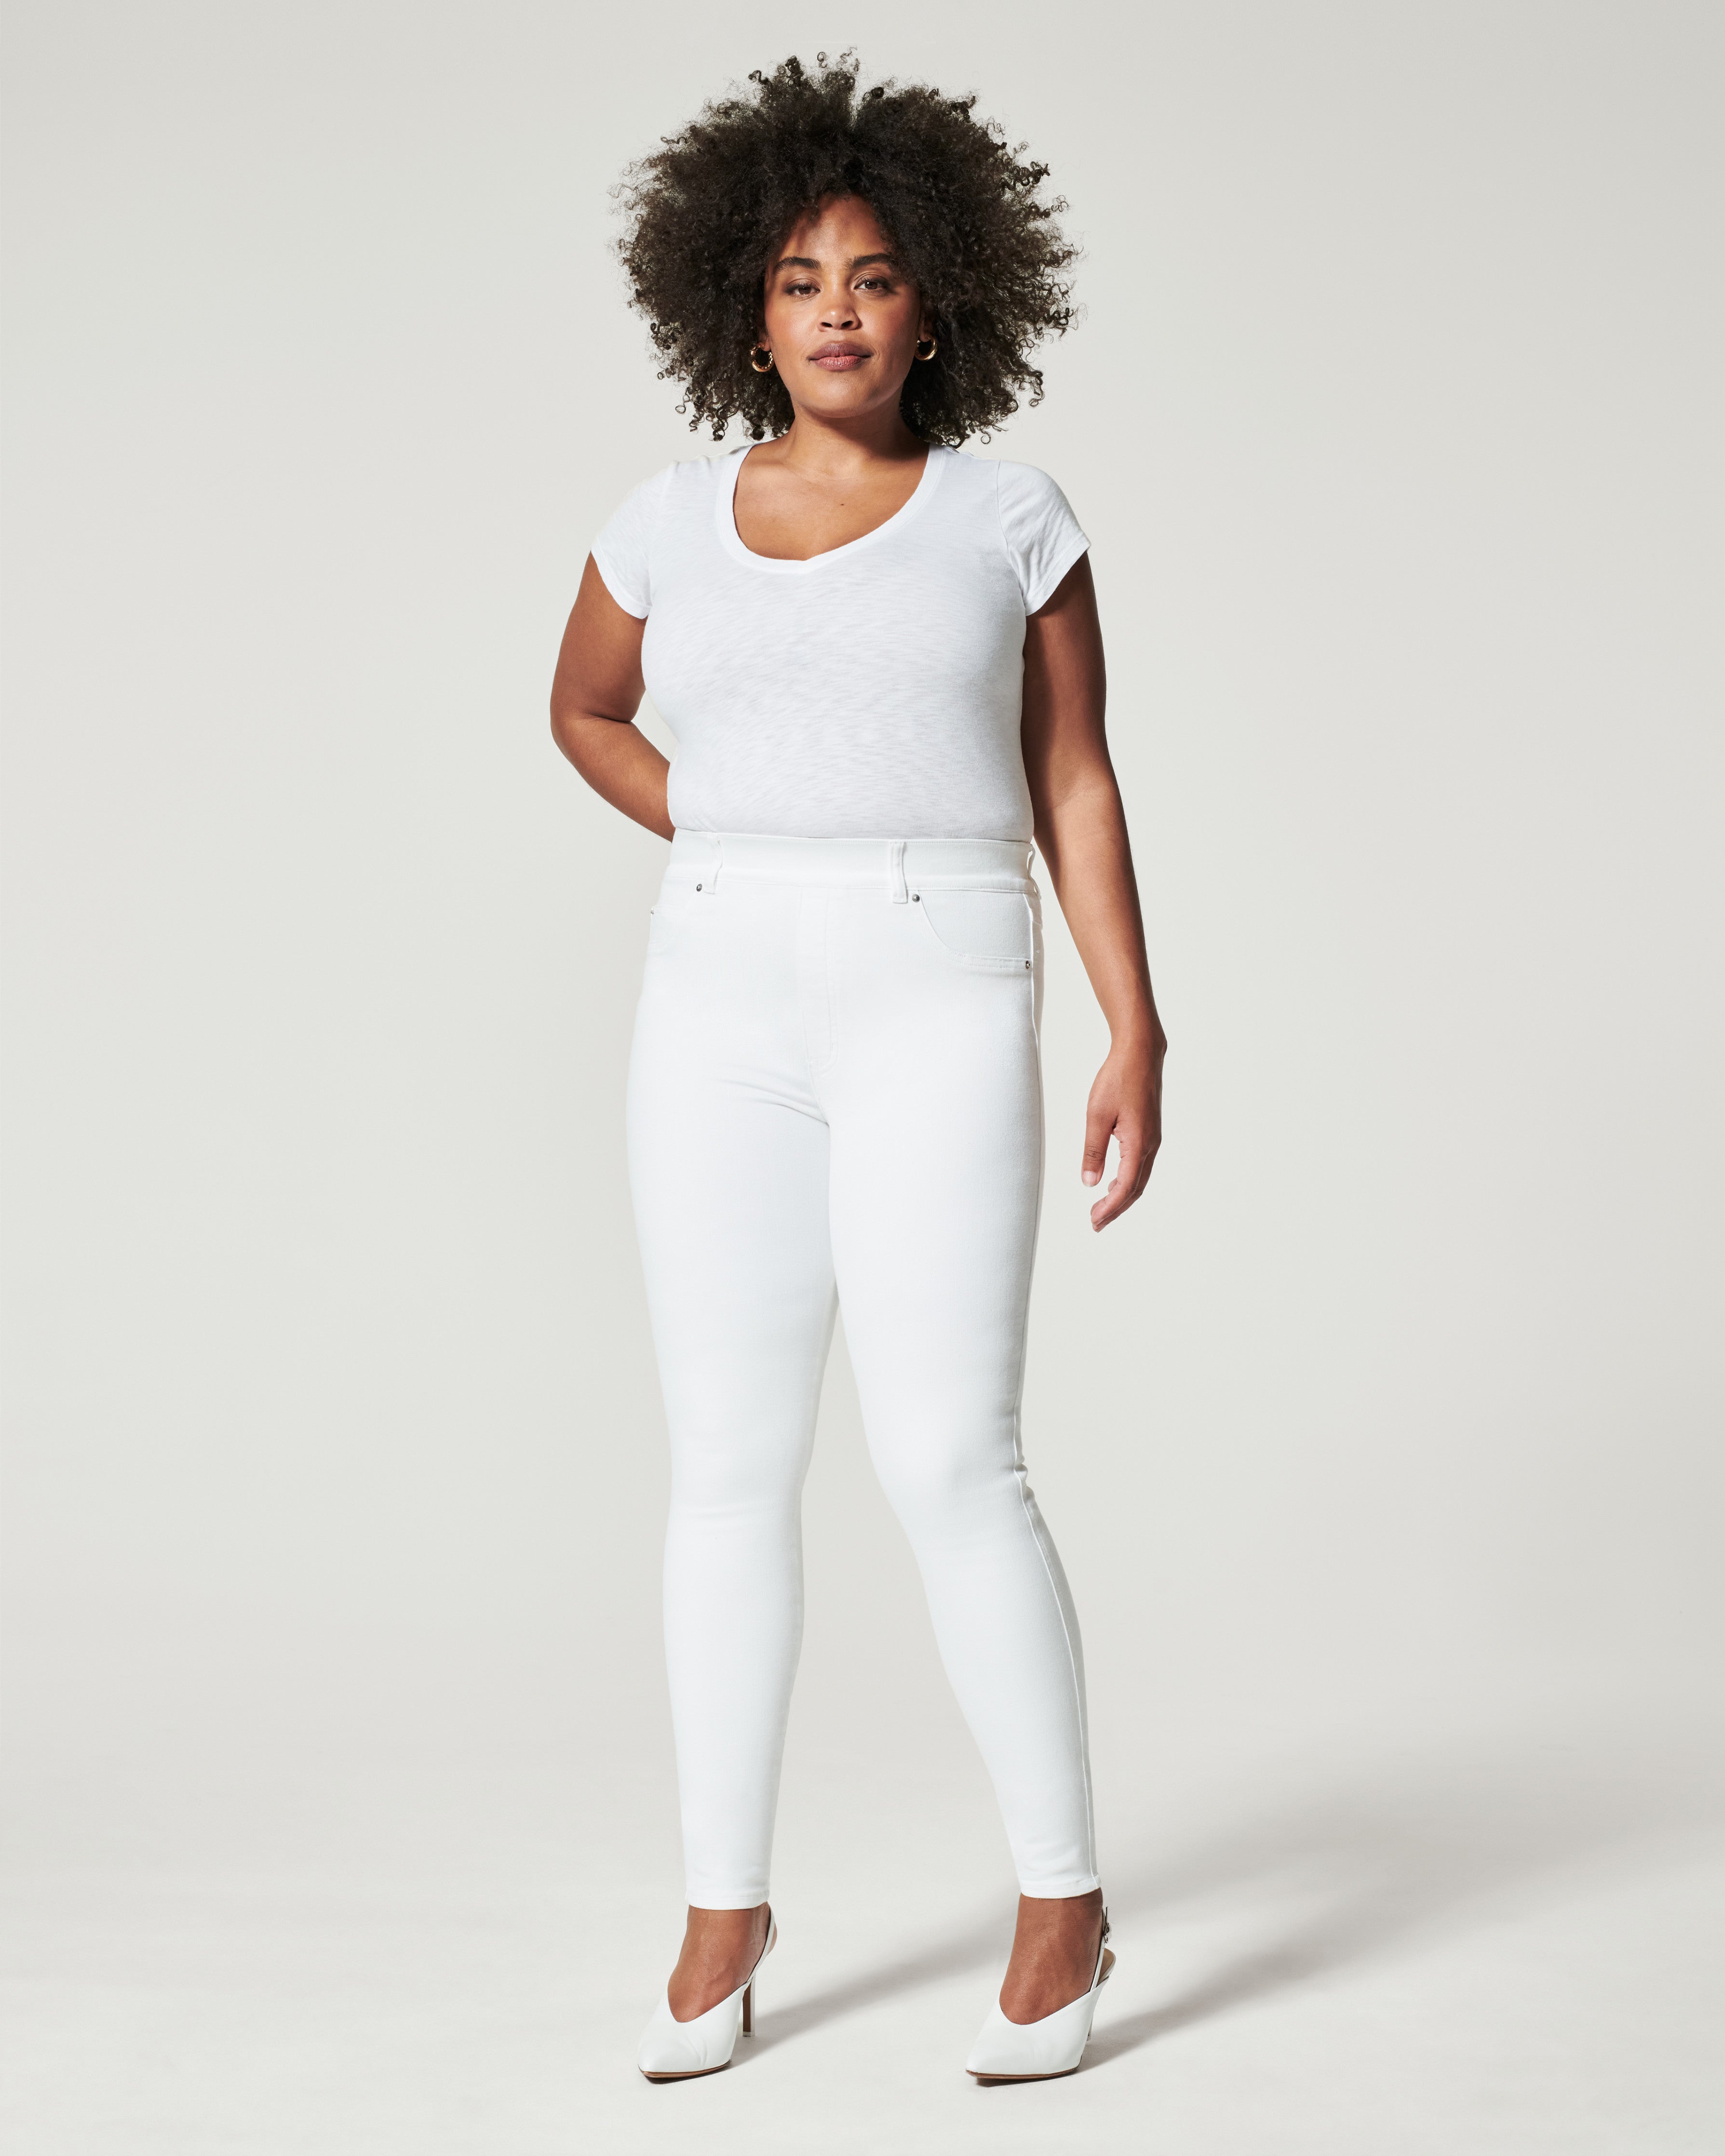 White shorts women – Plus size active shapewear-2 back pockets